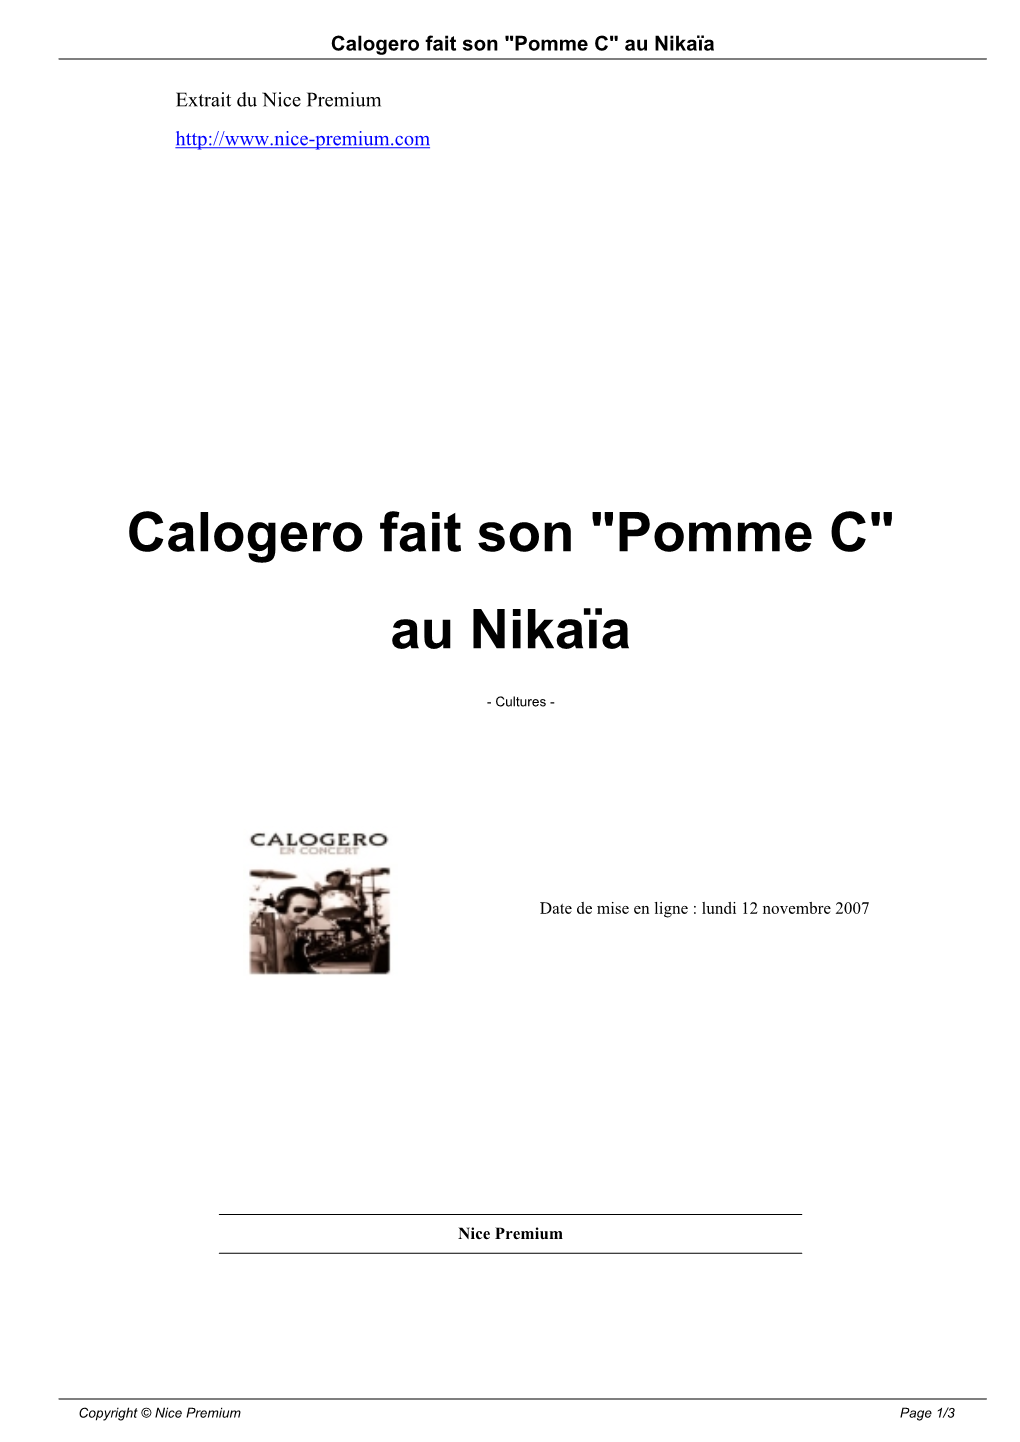 Calogero Fait Son "Pomme C" Au Nikaïa